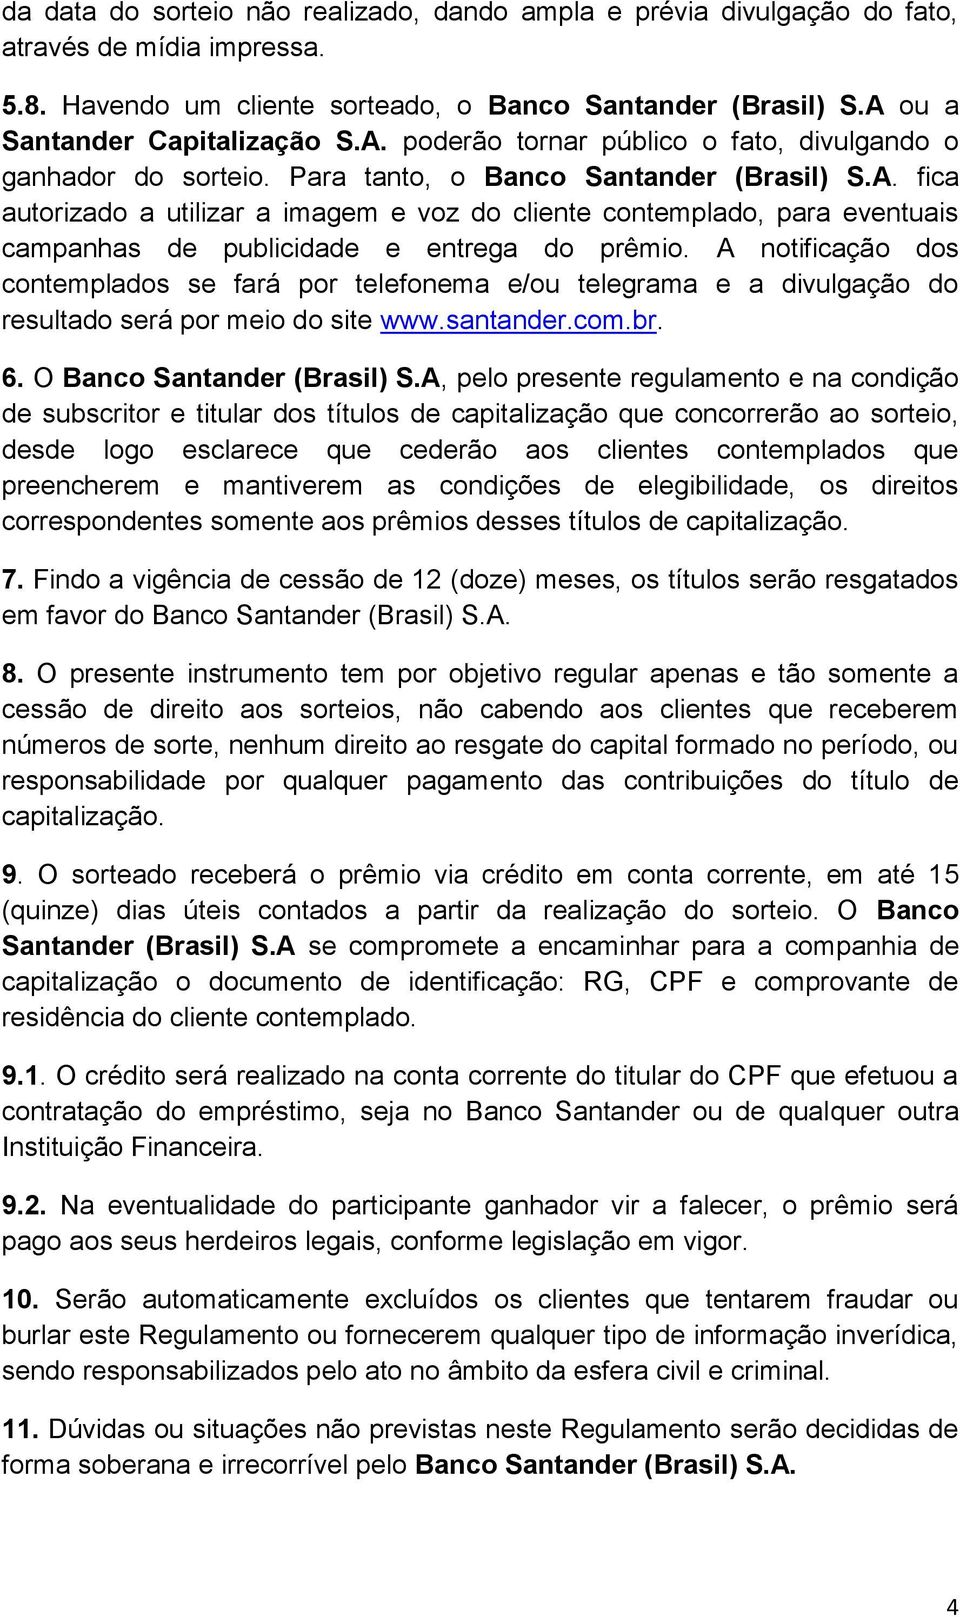 A notificação dos contemplados se fará por telefonema e/ou telegrama e a divulgação do resultado será por meio do site www.santander.com.br. 6. O Banco Santander (Brasil) S.